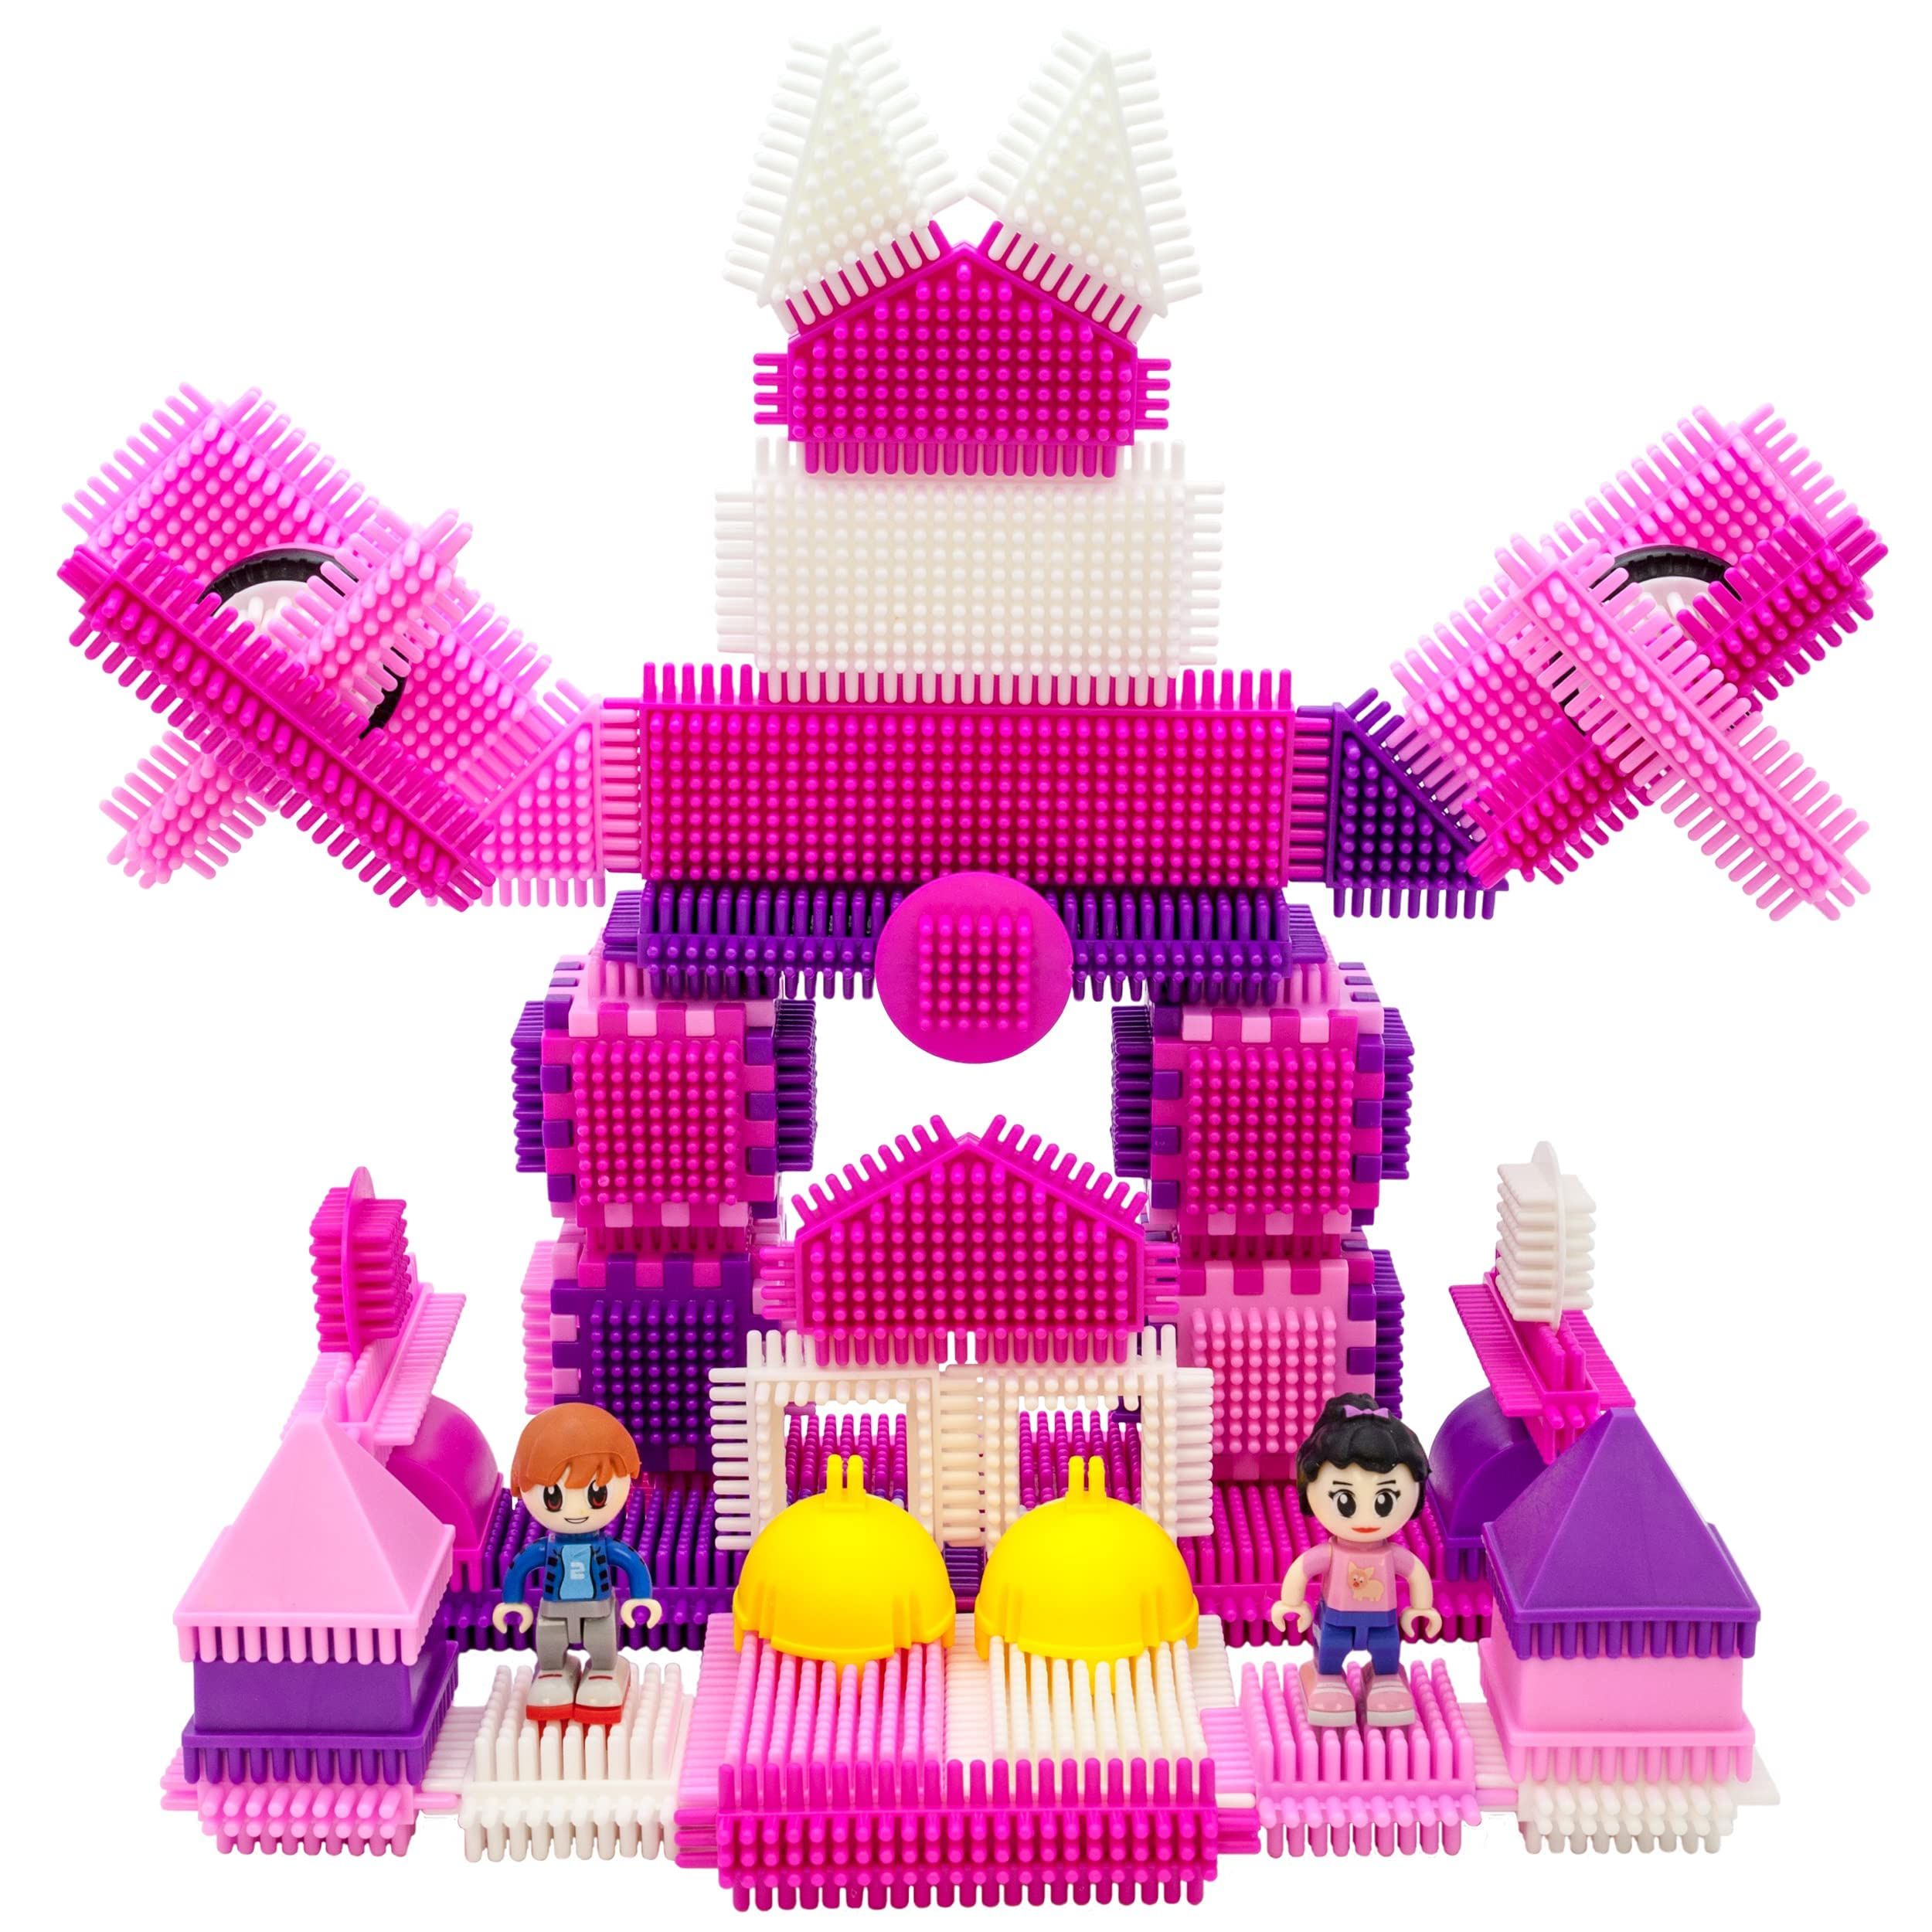 PicassoTiles PTB106 106pcs Bristle Lock Building Blocks Tiles Pink Castle Theme Set w/ Human Figu... | Amazon (US)